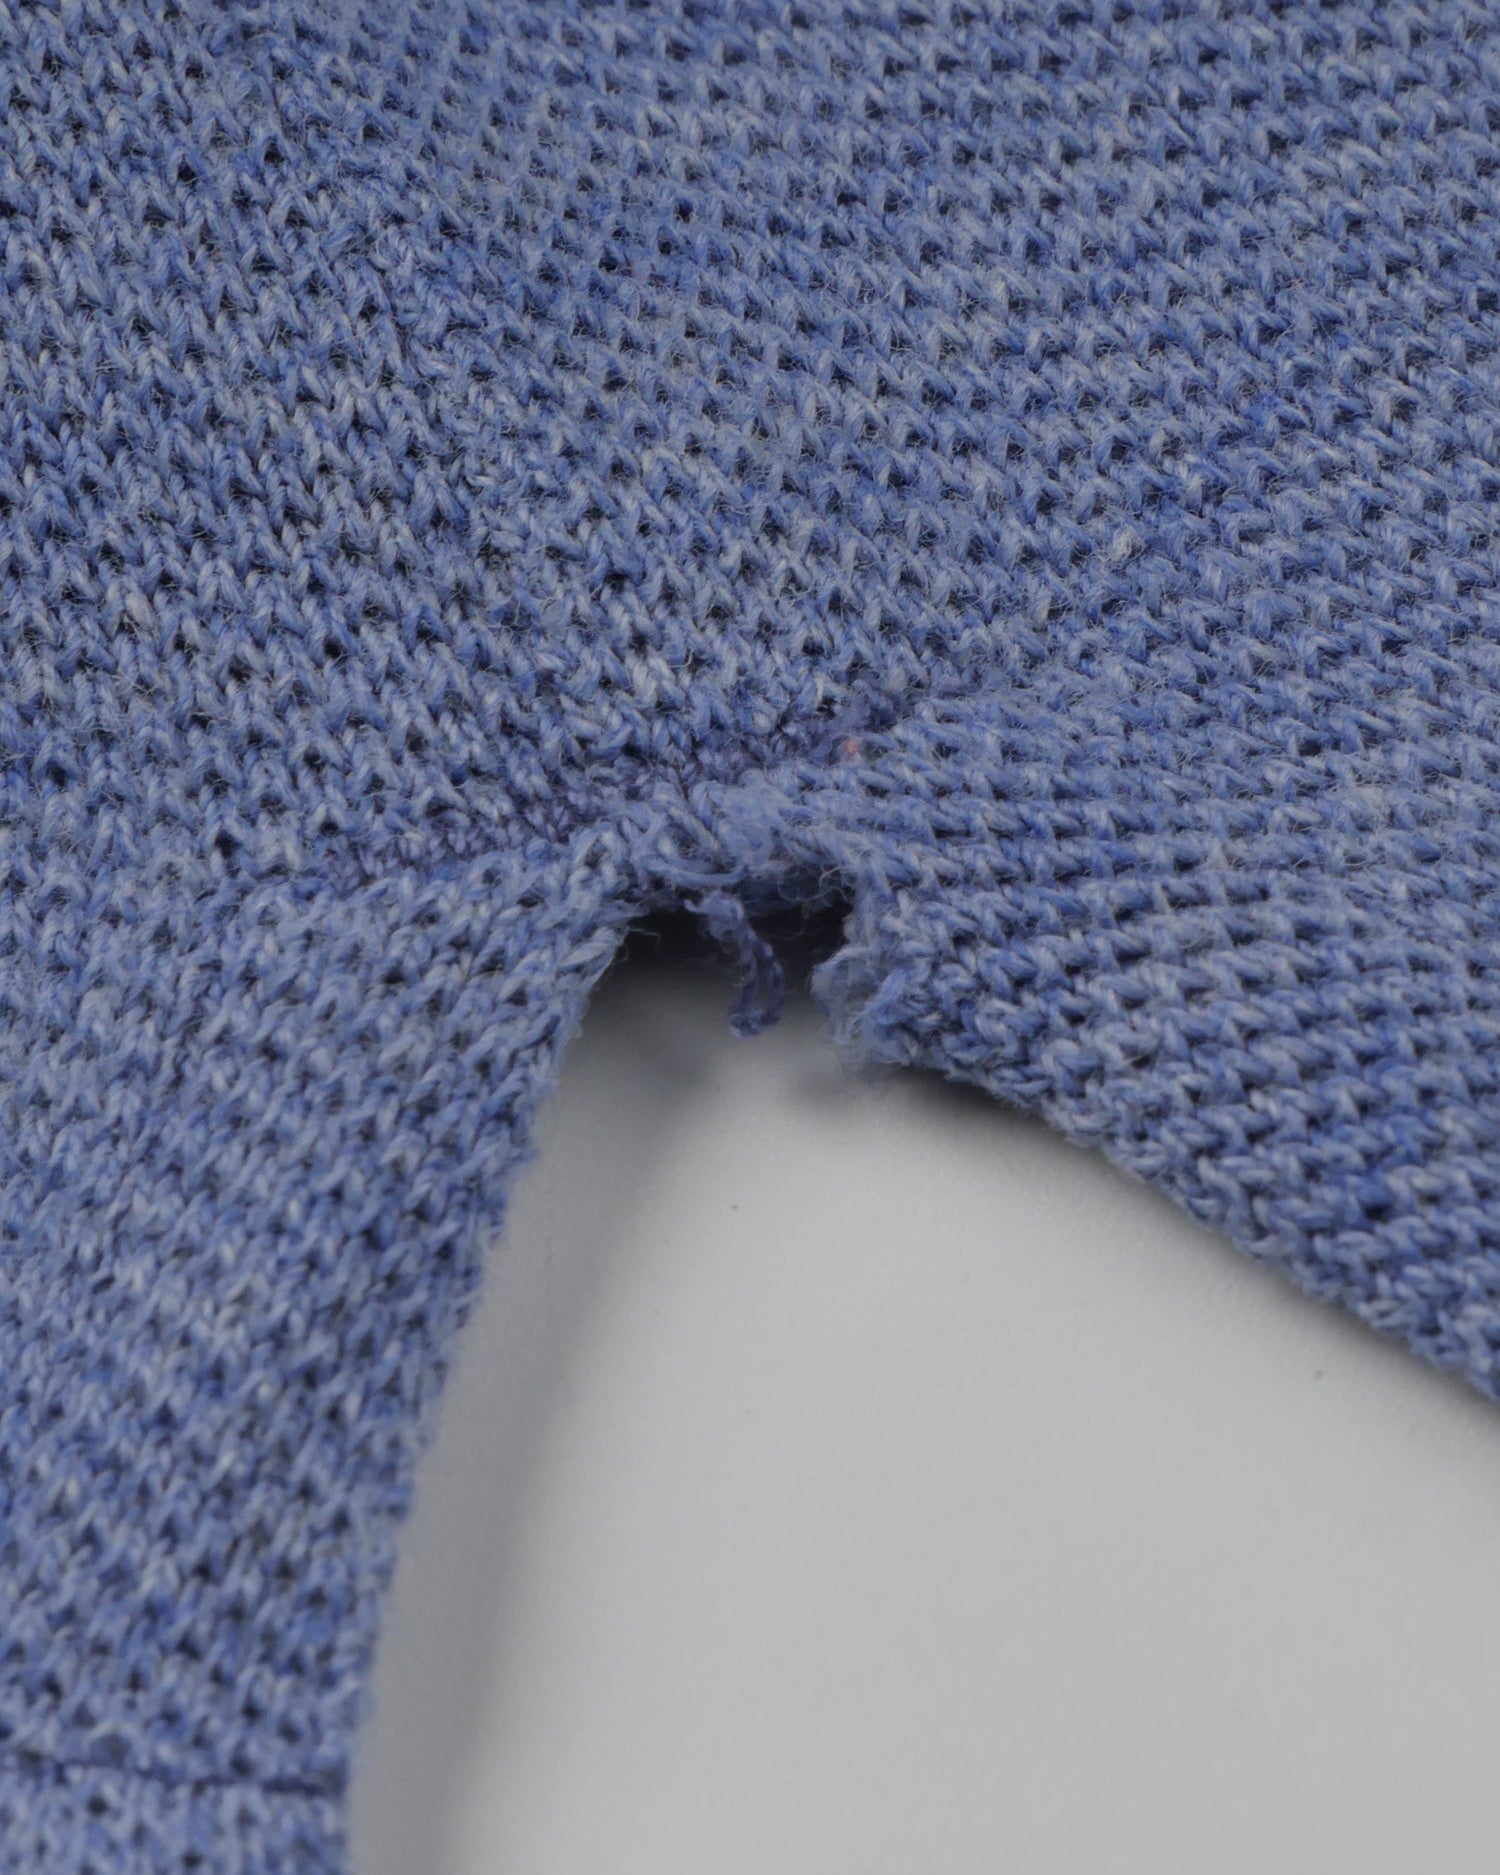 Reebok blau Polo Shirt - Peeces